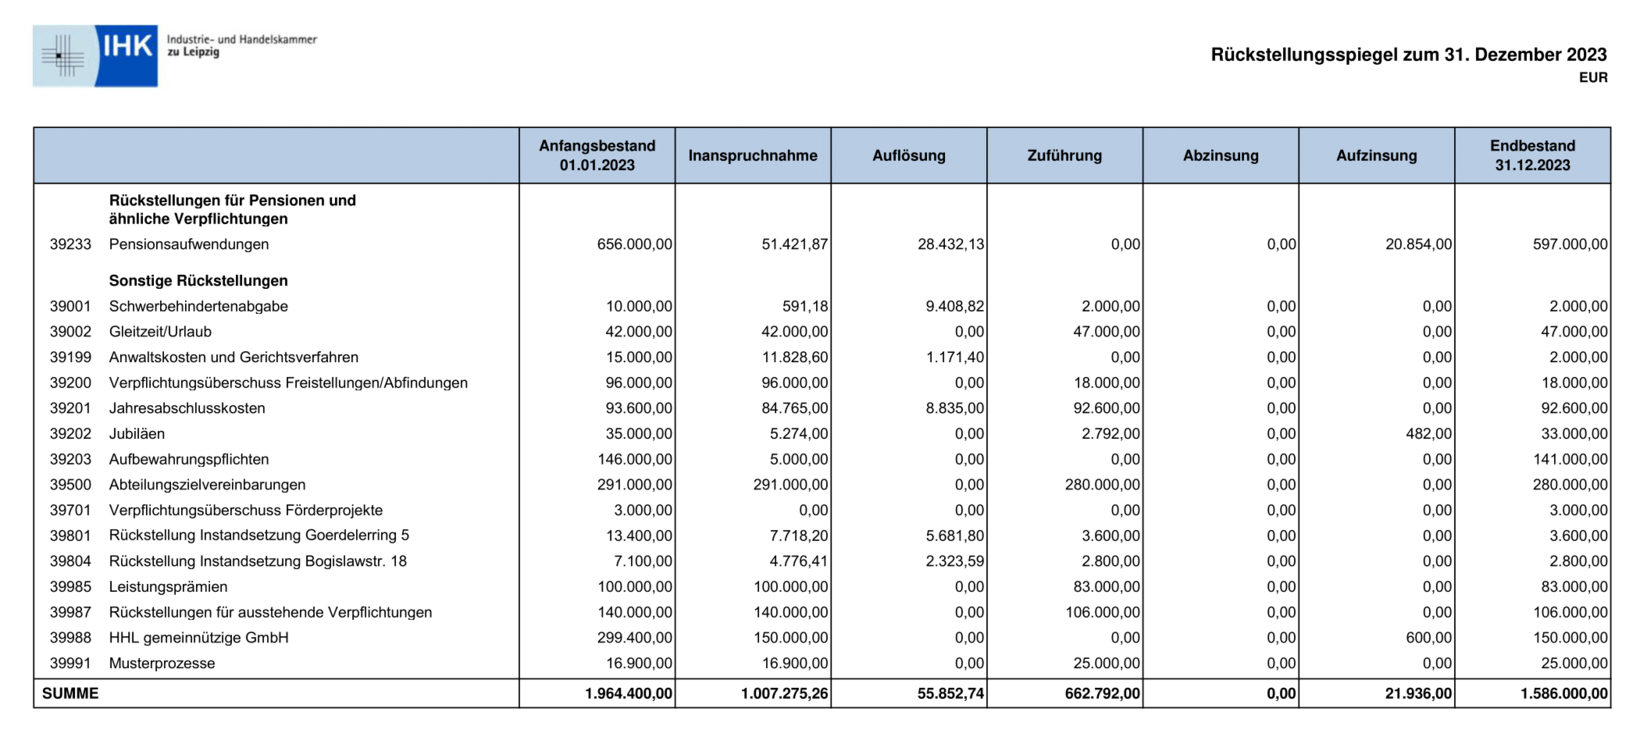 Rückstellungsspiegel zum 31.12.23. Endbestand 1.586.000,00 €